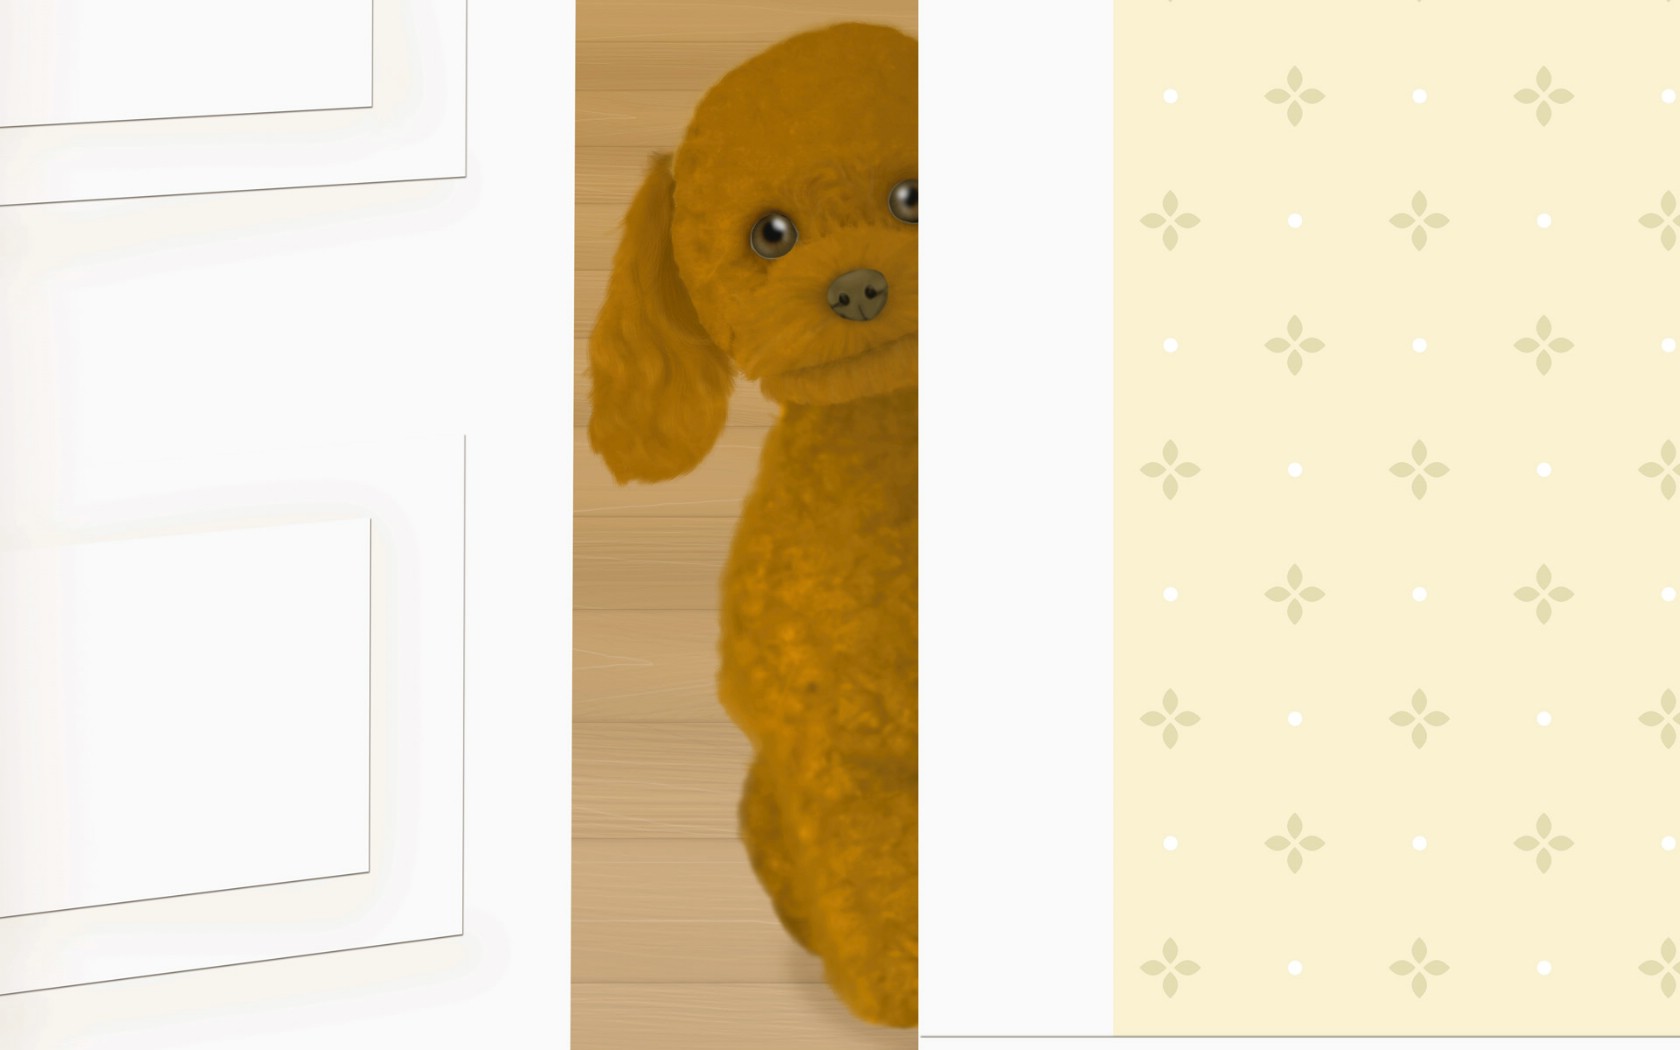 壁纸1680x1050 Painter 柔和风格狗狗插画壁纸 Painter 柔和插画-我的宠物狗壁纸 Painter 柔和插画-我的宠物狗图片 Painter 柔和插画-我的宠物狗素材 动物壁纸 动物图库 动物图片素材桌面壁纸